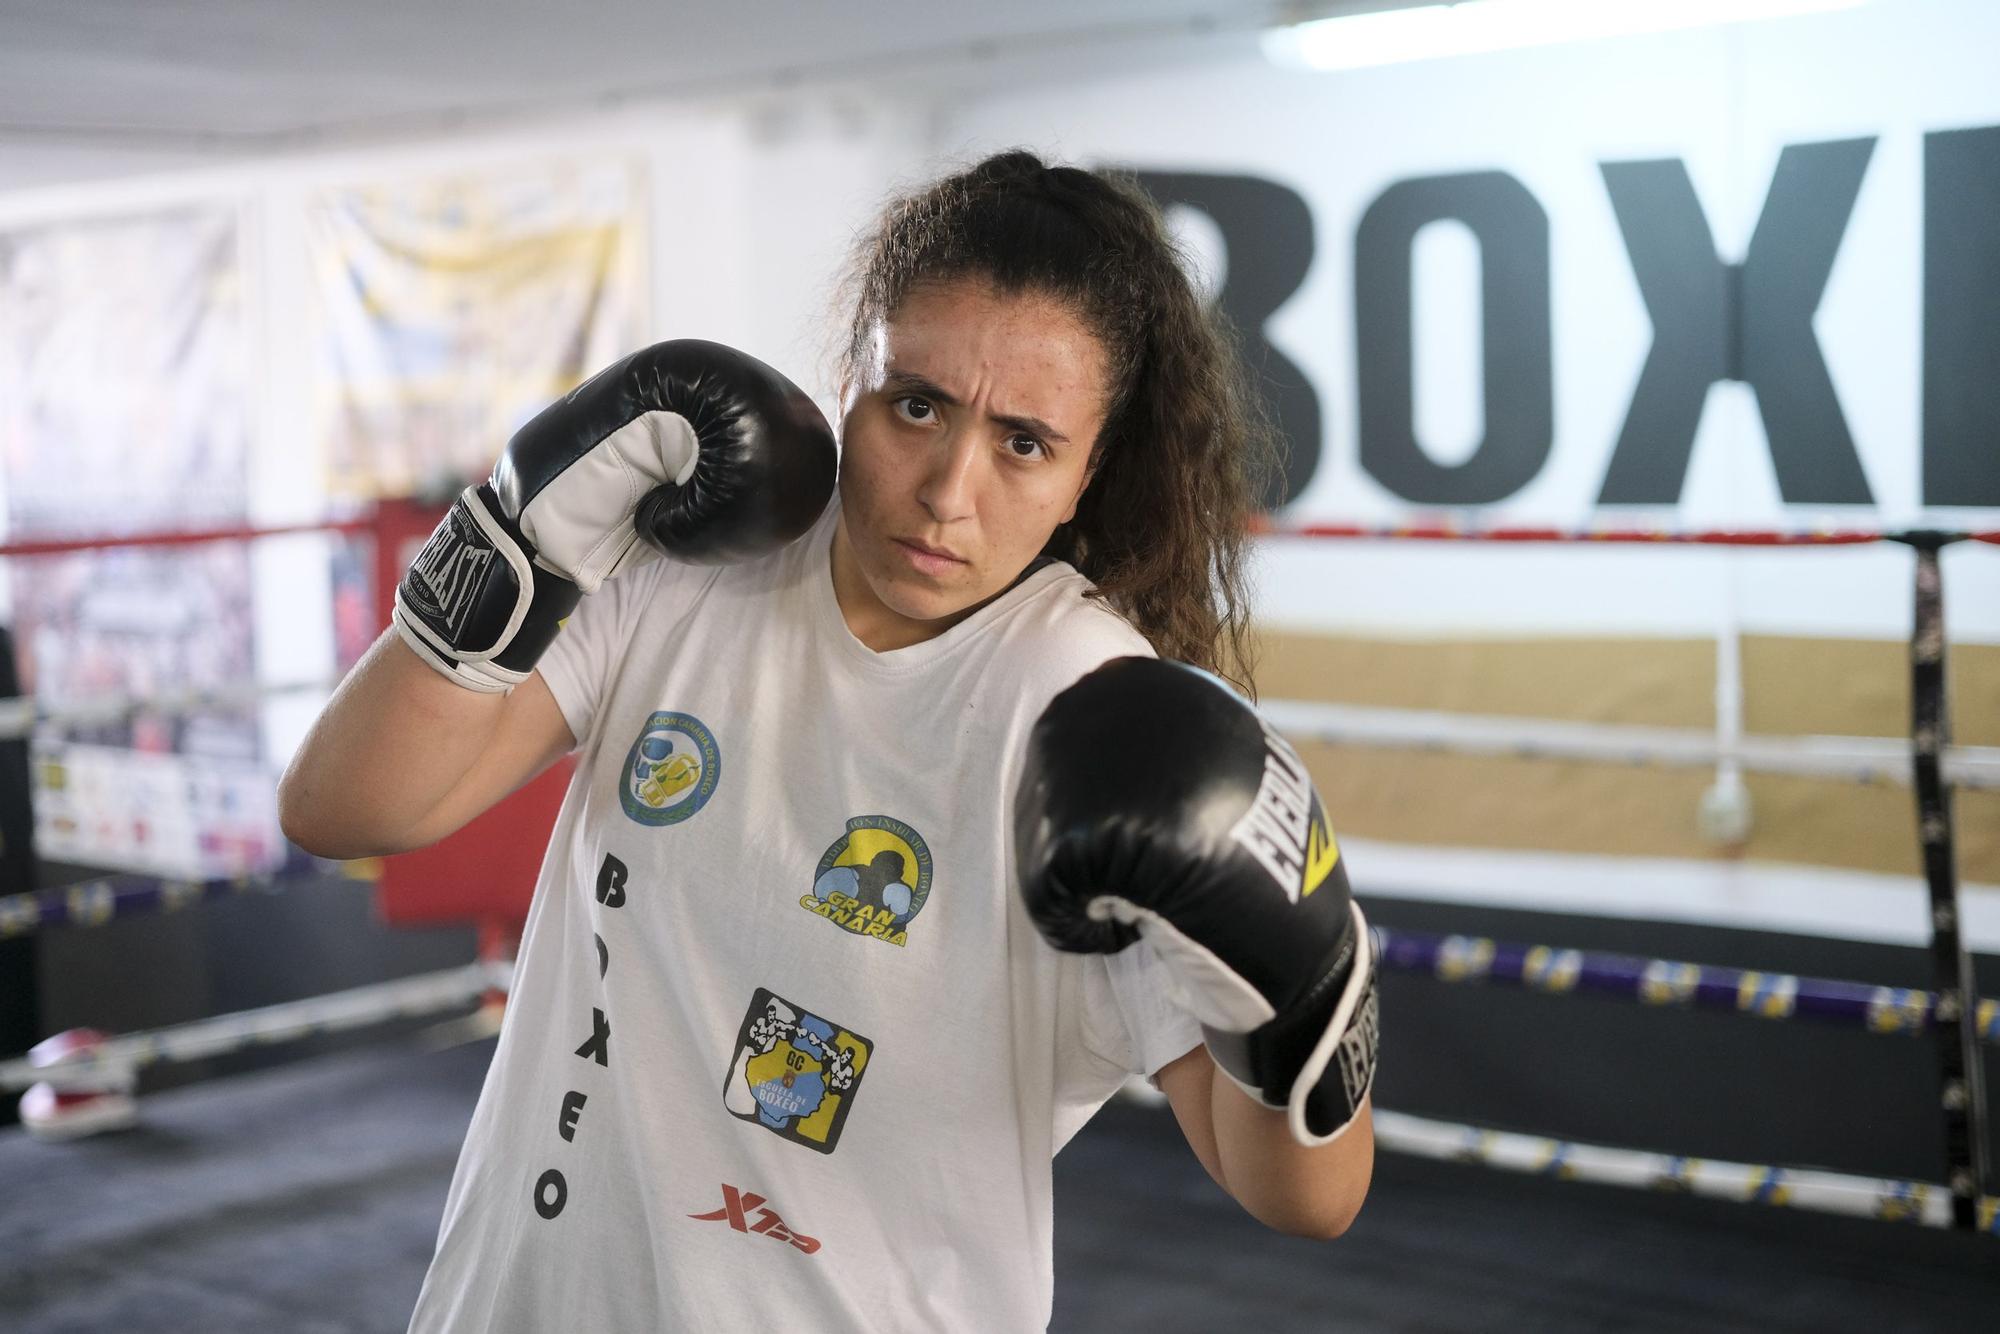 La Escuela de Boxeo de Gran Canaria prepara el Nacional